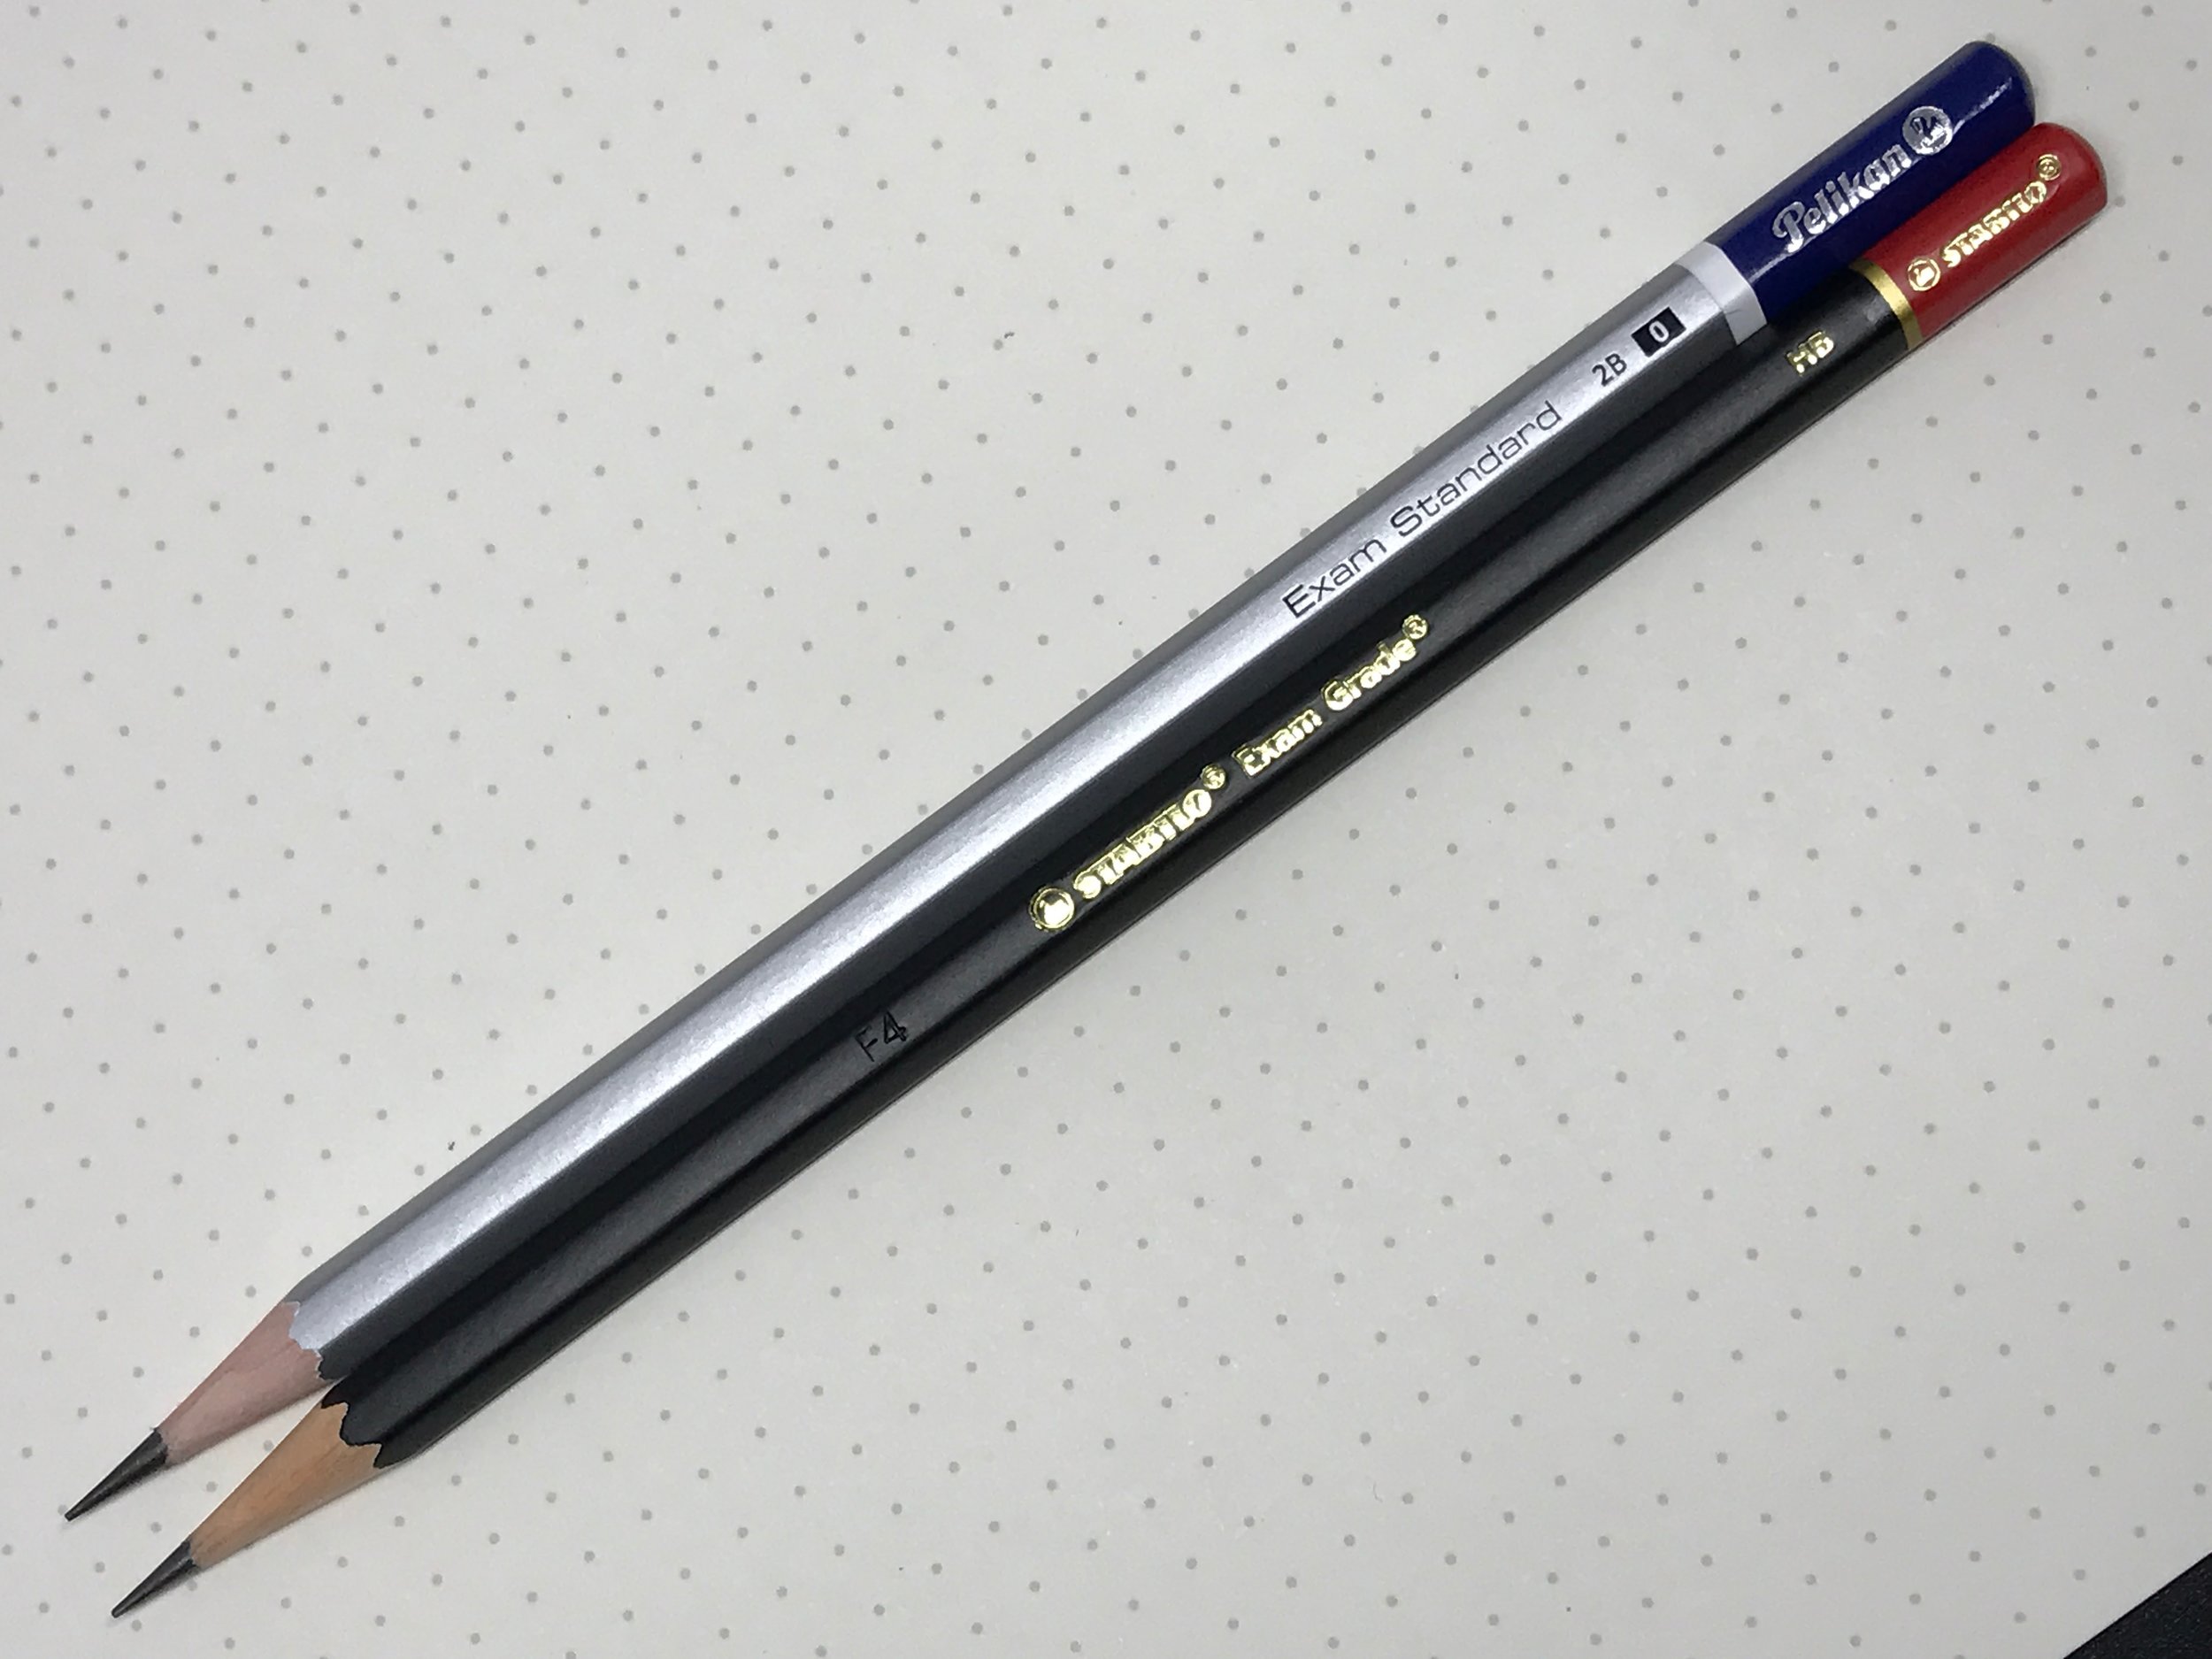 Sharpener Eraser STABILO Exam Grade HB Blister Pack of 4 Graphite Pencil